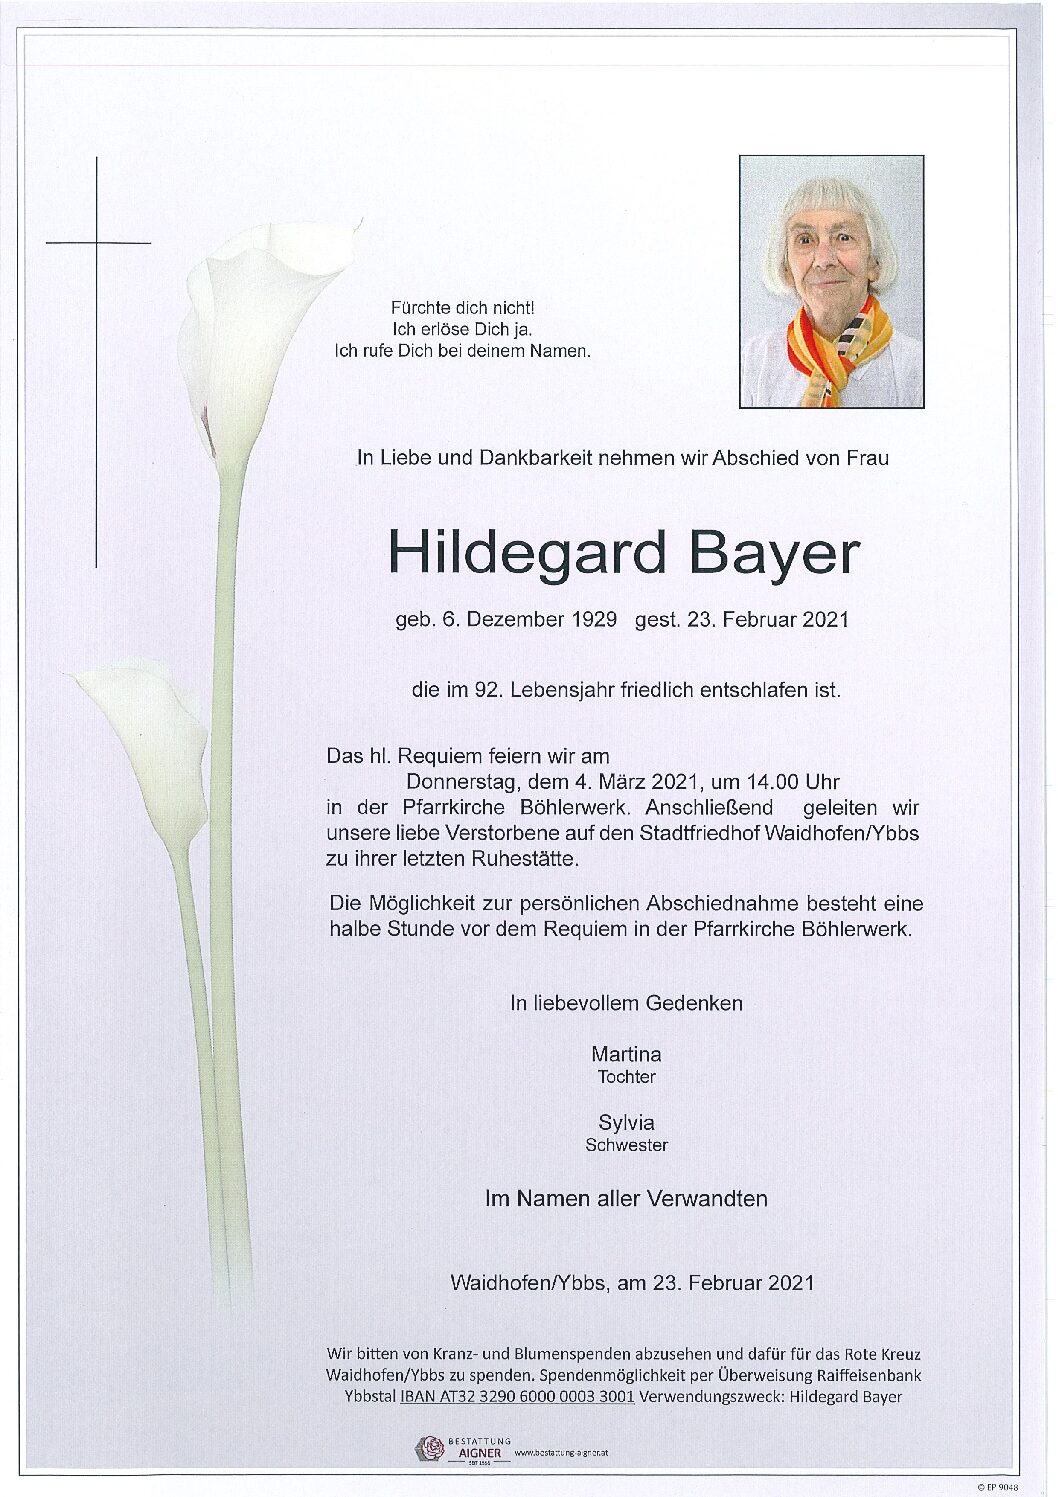 Hildegard Bayer